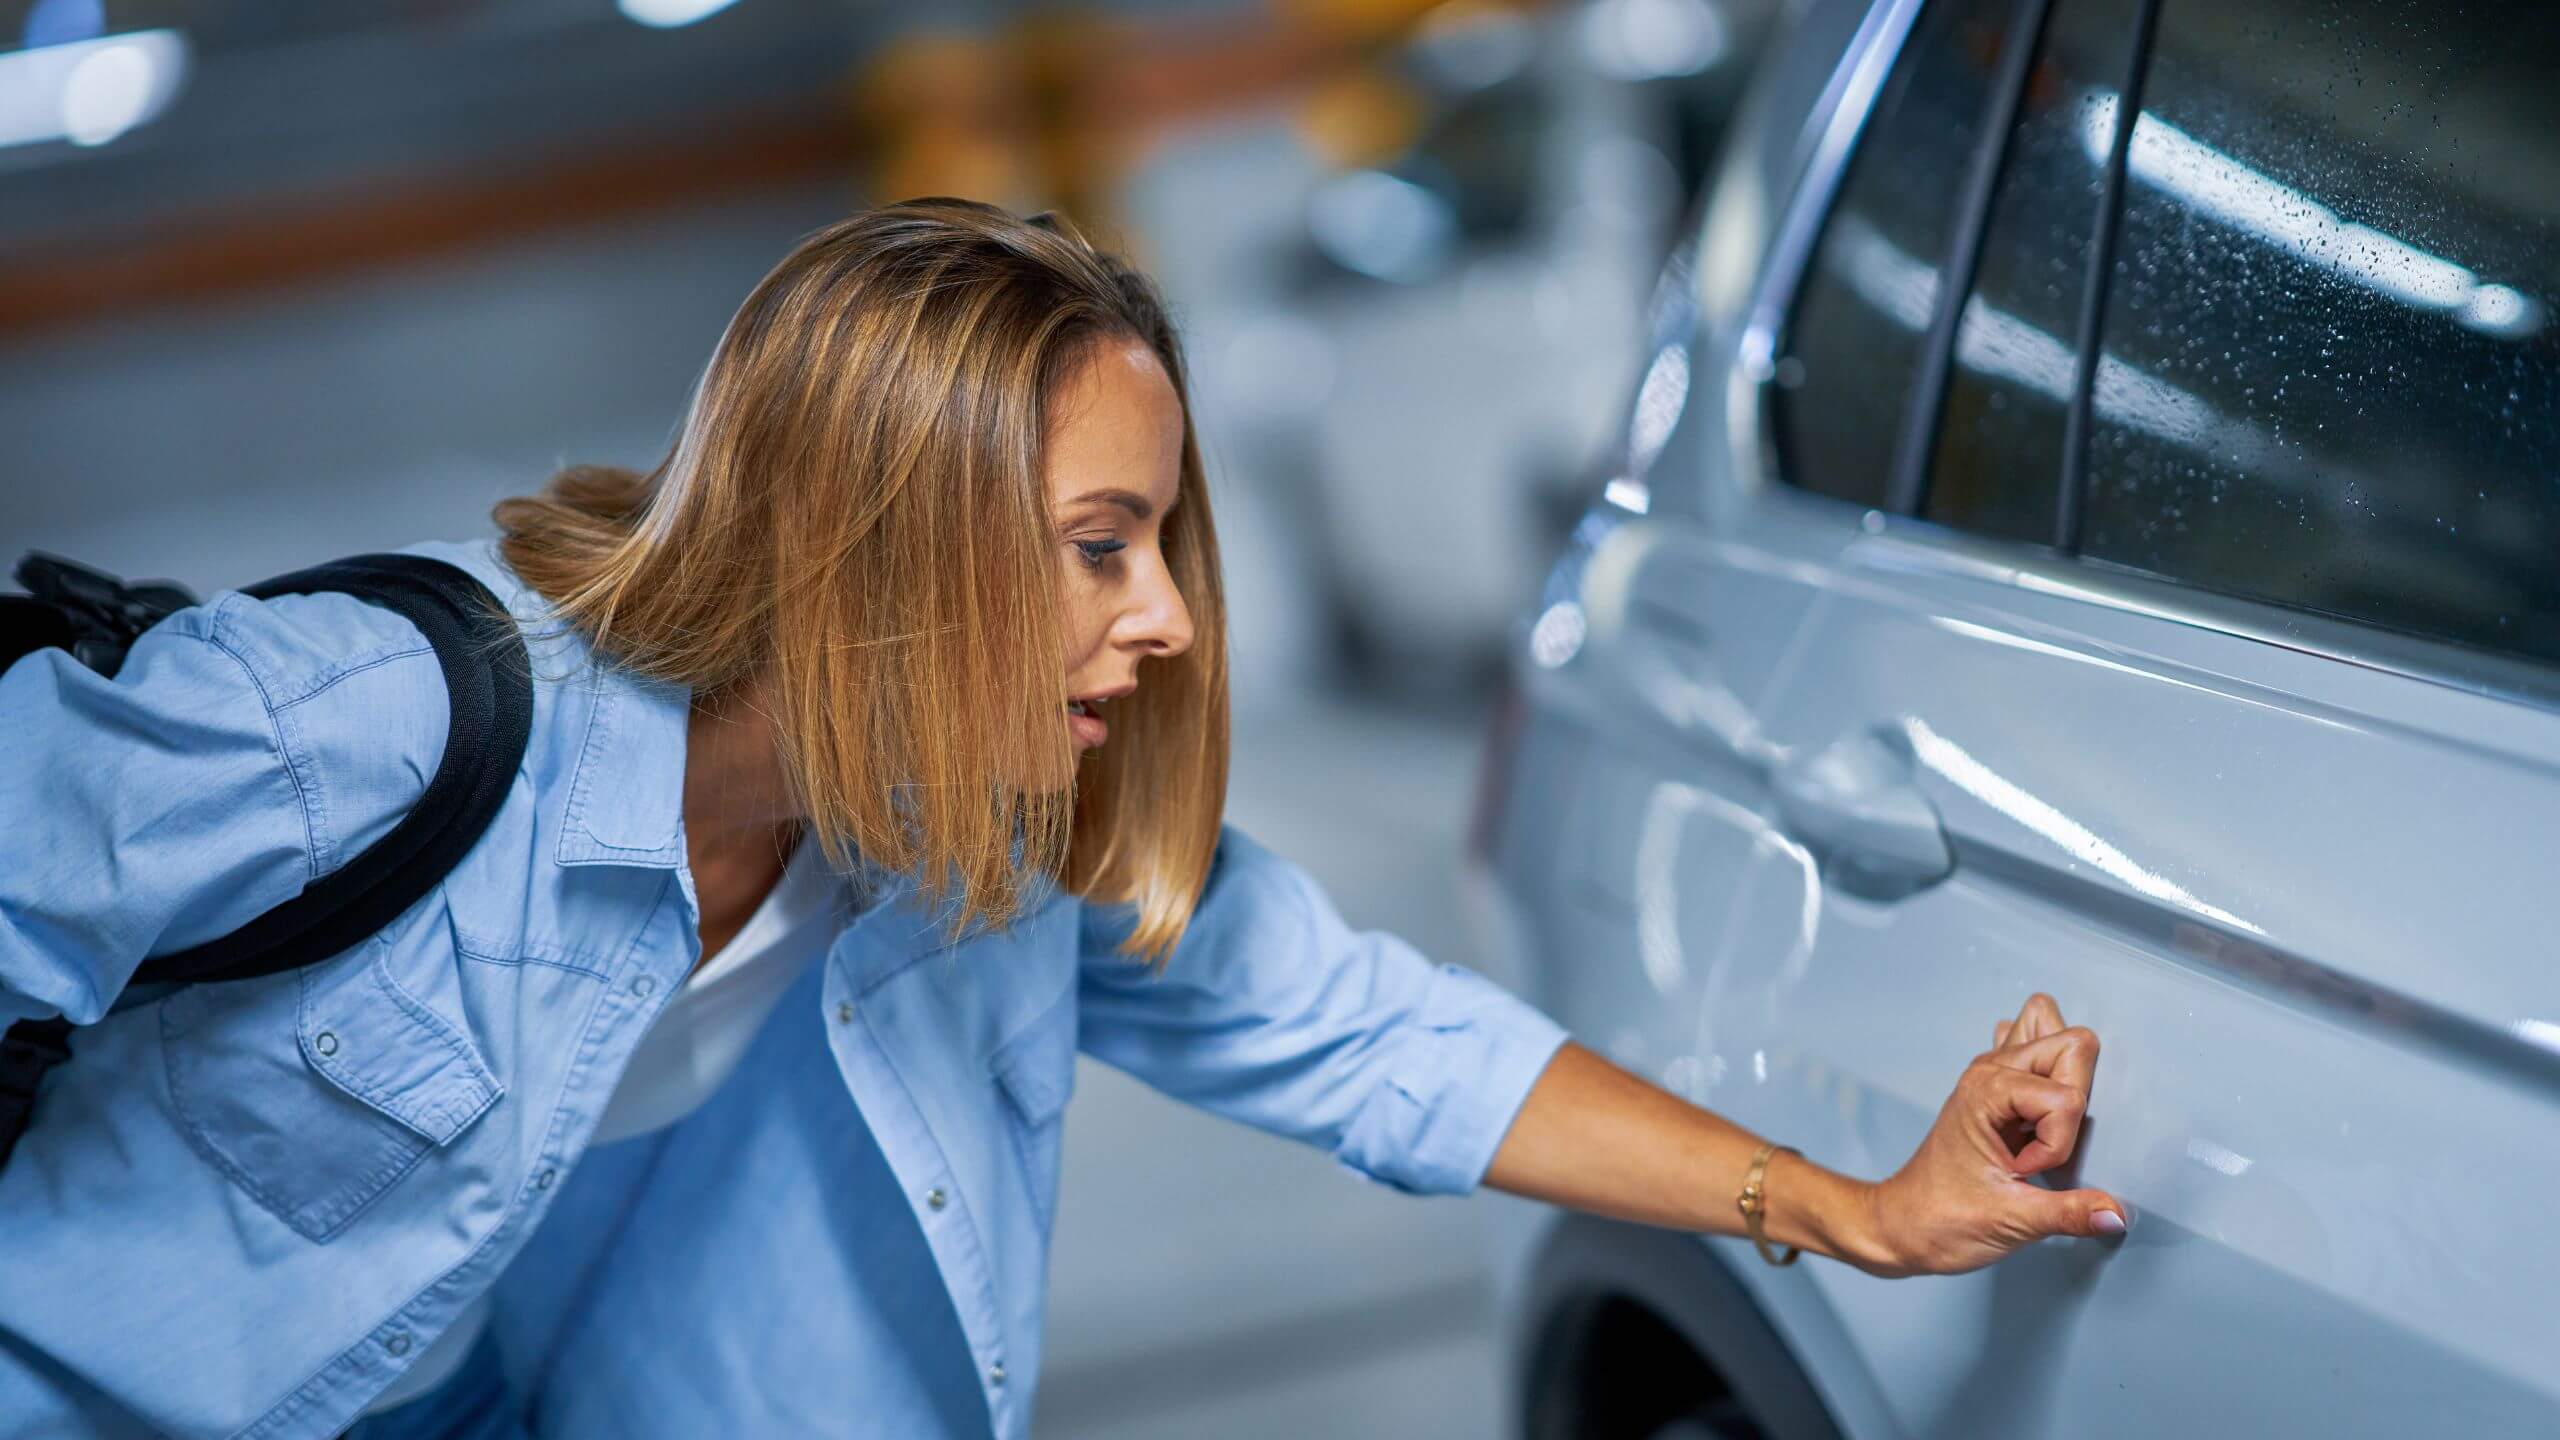 Car Scratch Repair Costs